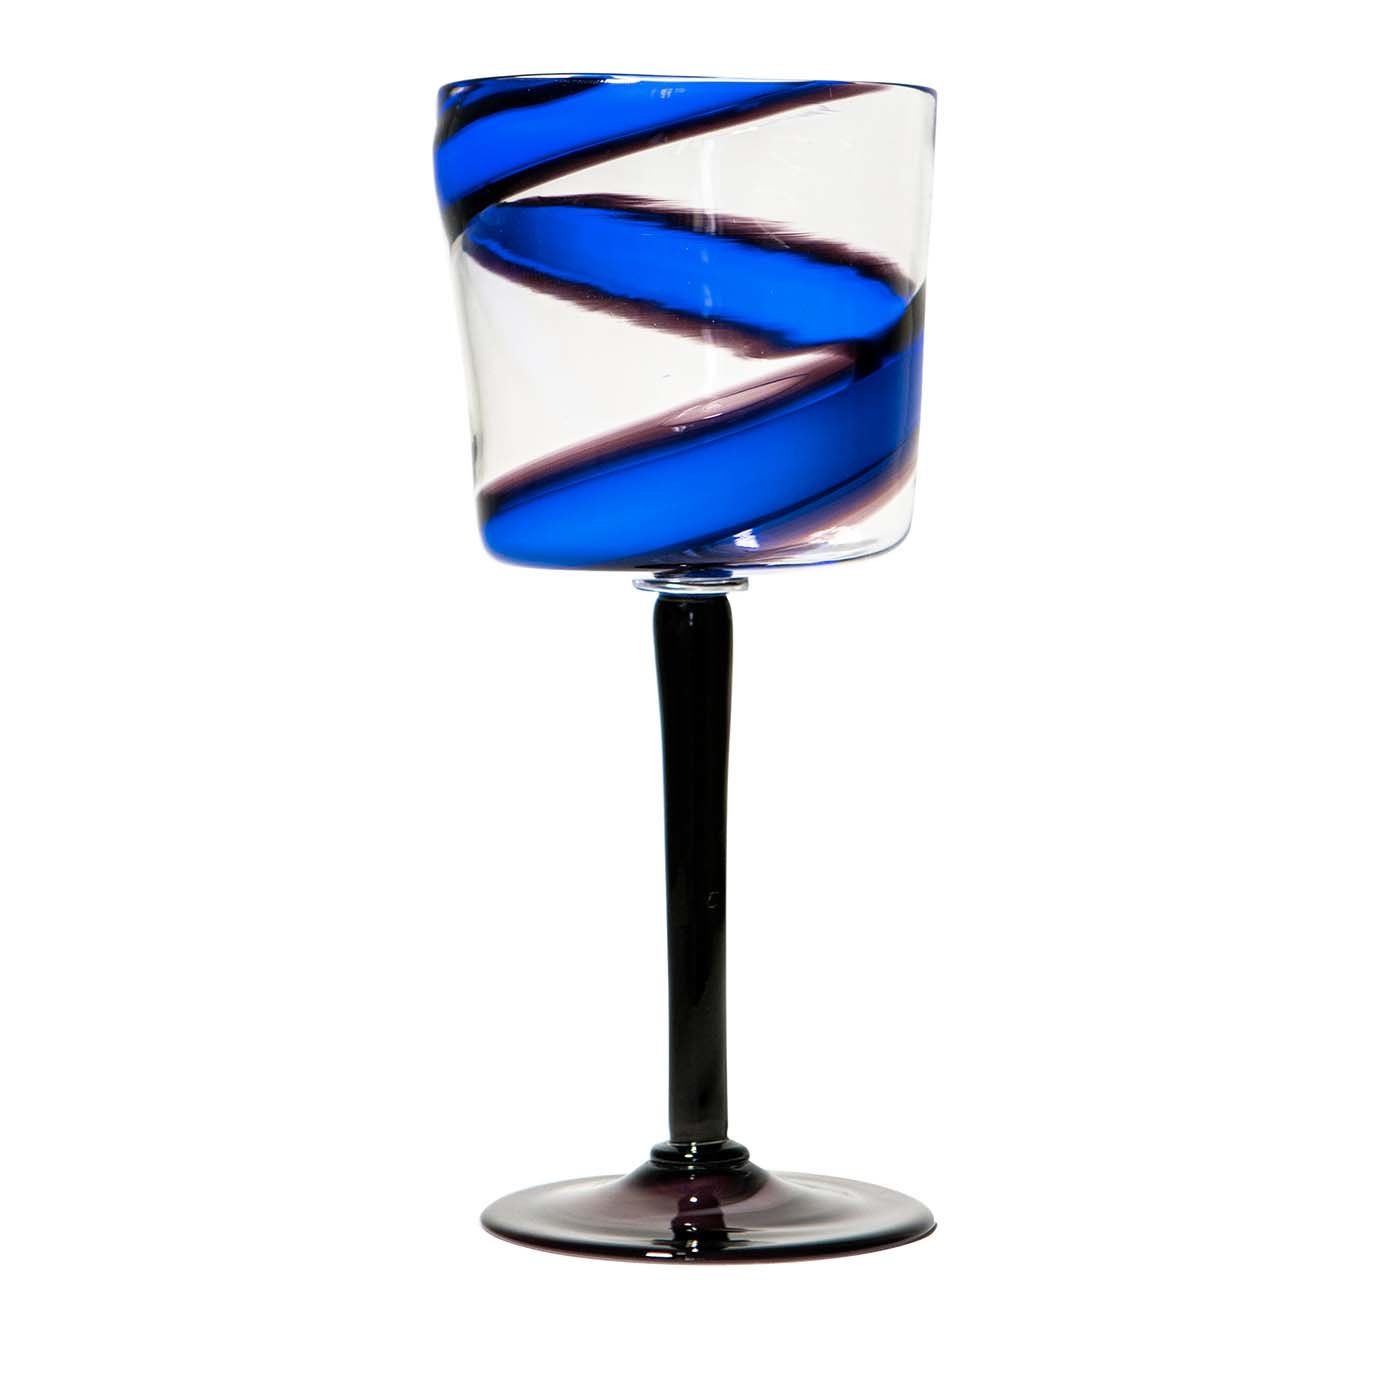 Vortex Stem Glass in Blue/Purple - Main view